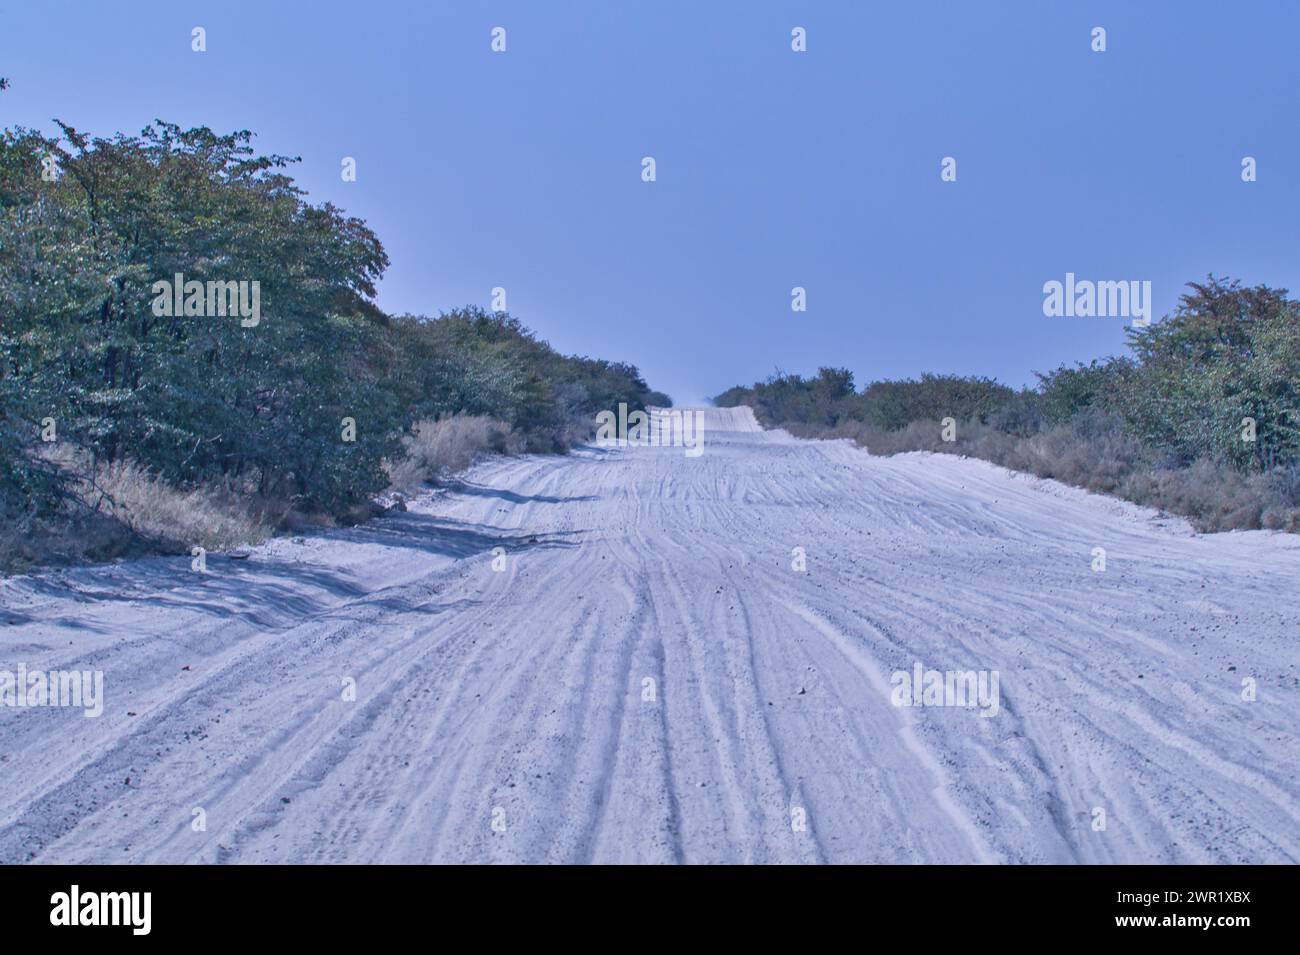 Eine Fernsicht auf eine Botswana Sandstraße ohne Fahrzeuge. Fahrzeugspuren sind im weichen Sand sichtbar. Stockfoto